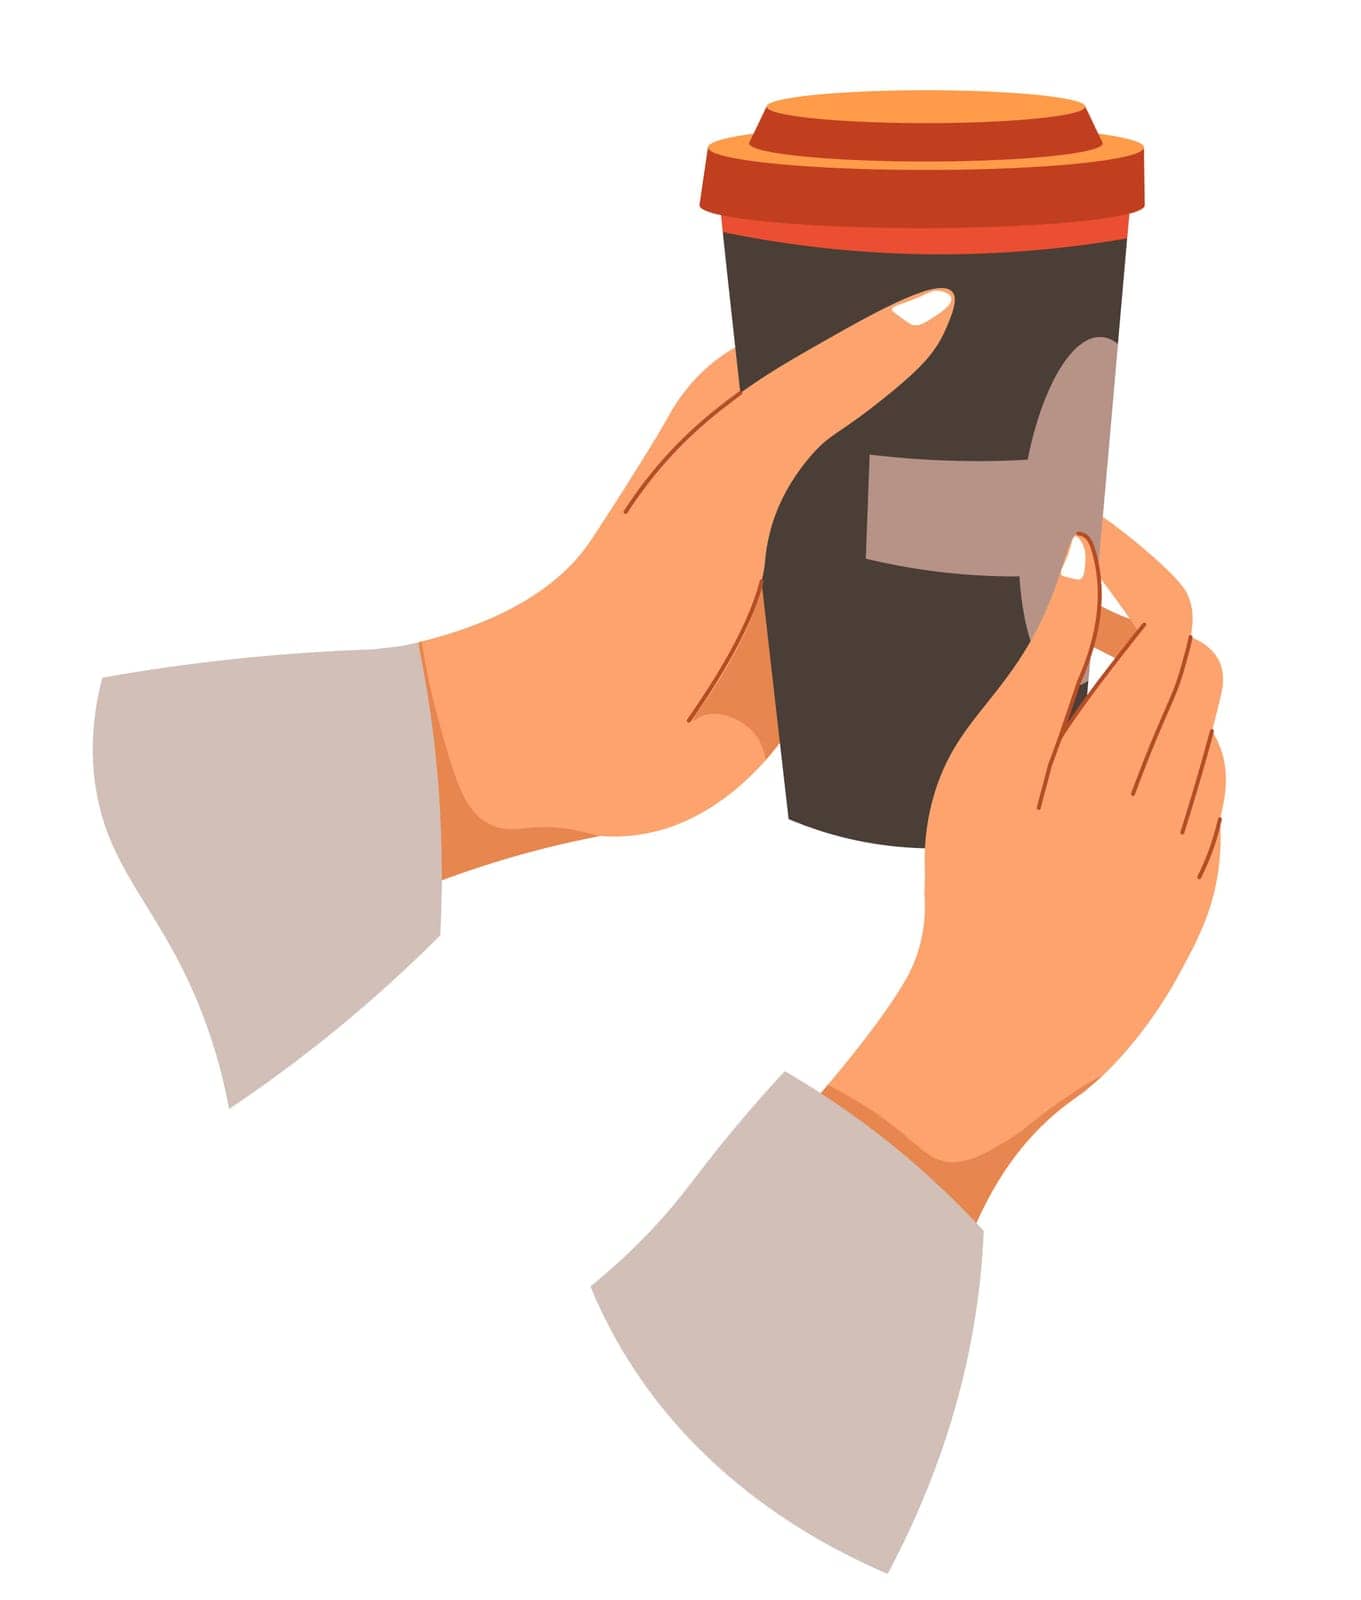 Takeaway coffee, hands holding brewed beverage by Sonulkaster